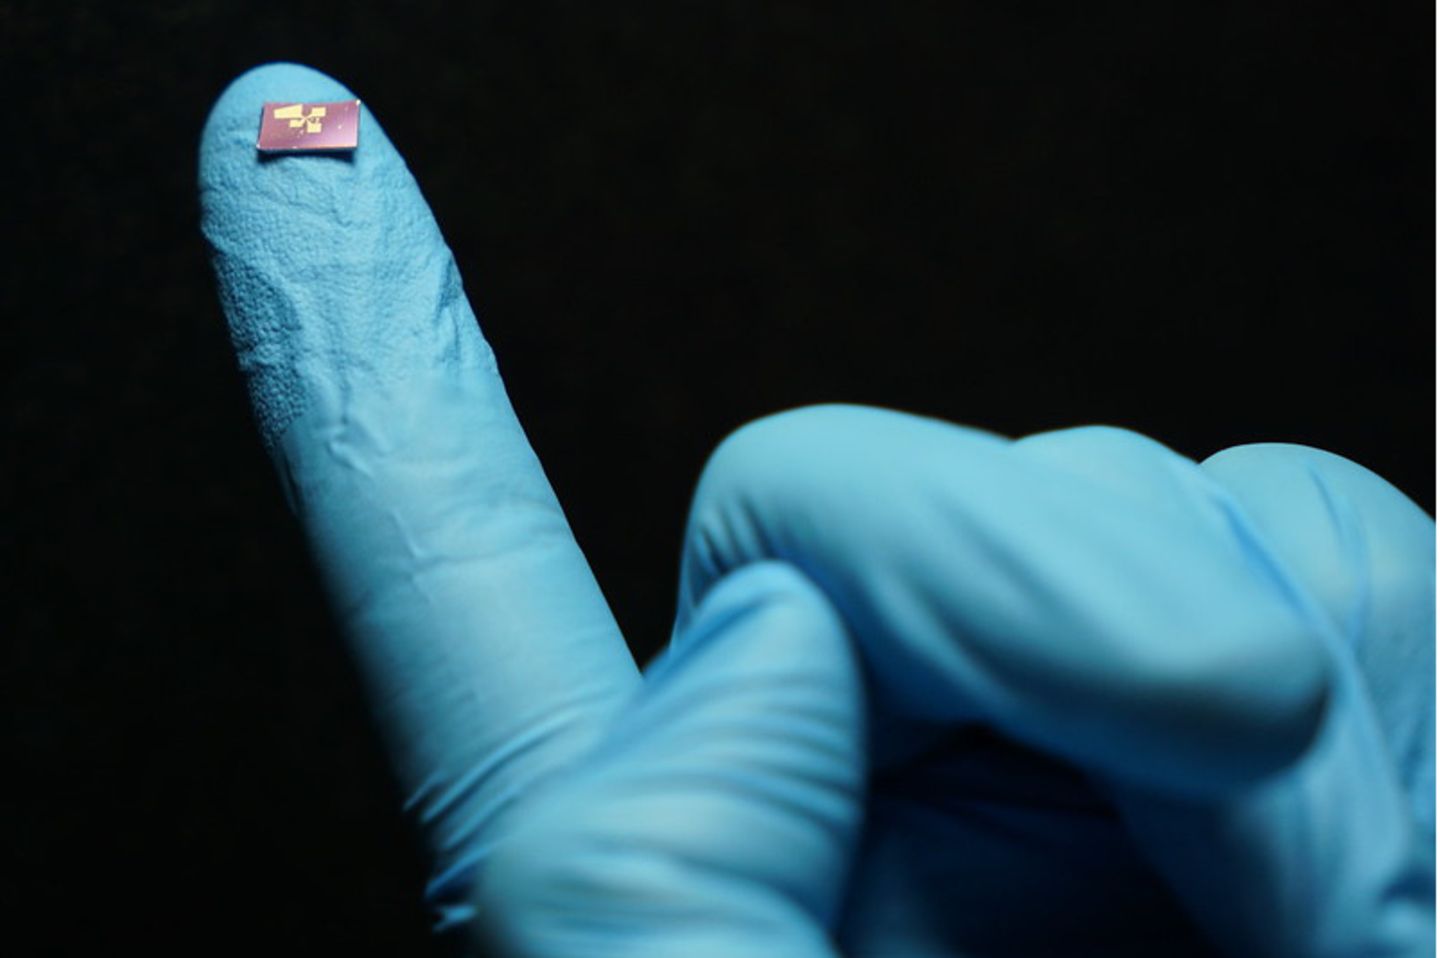 Mini-Spektrometer auf dem Finger einer Hand